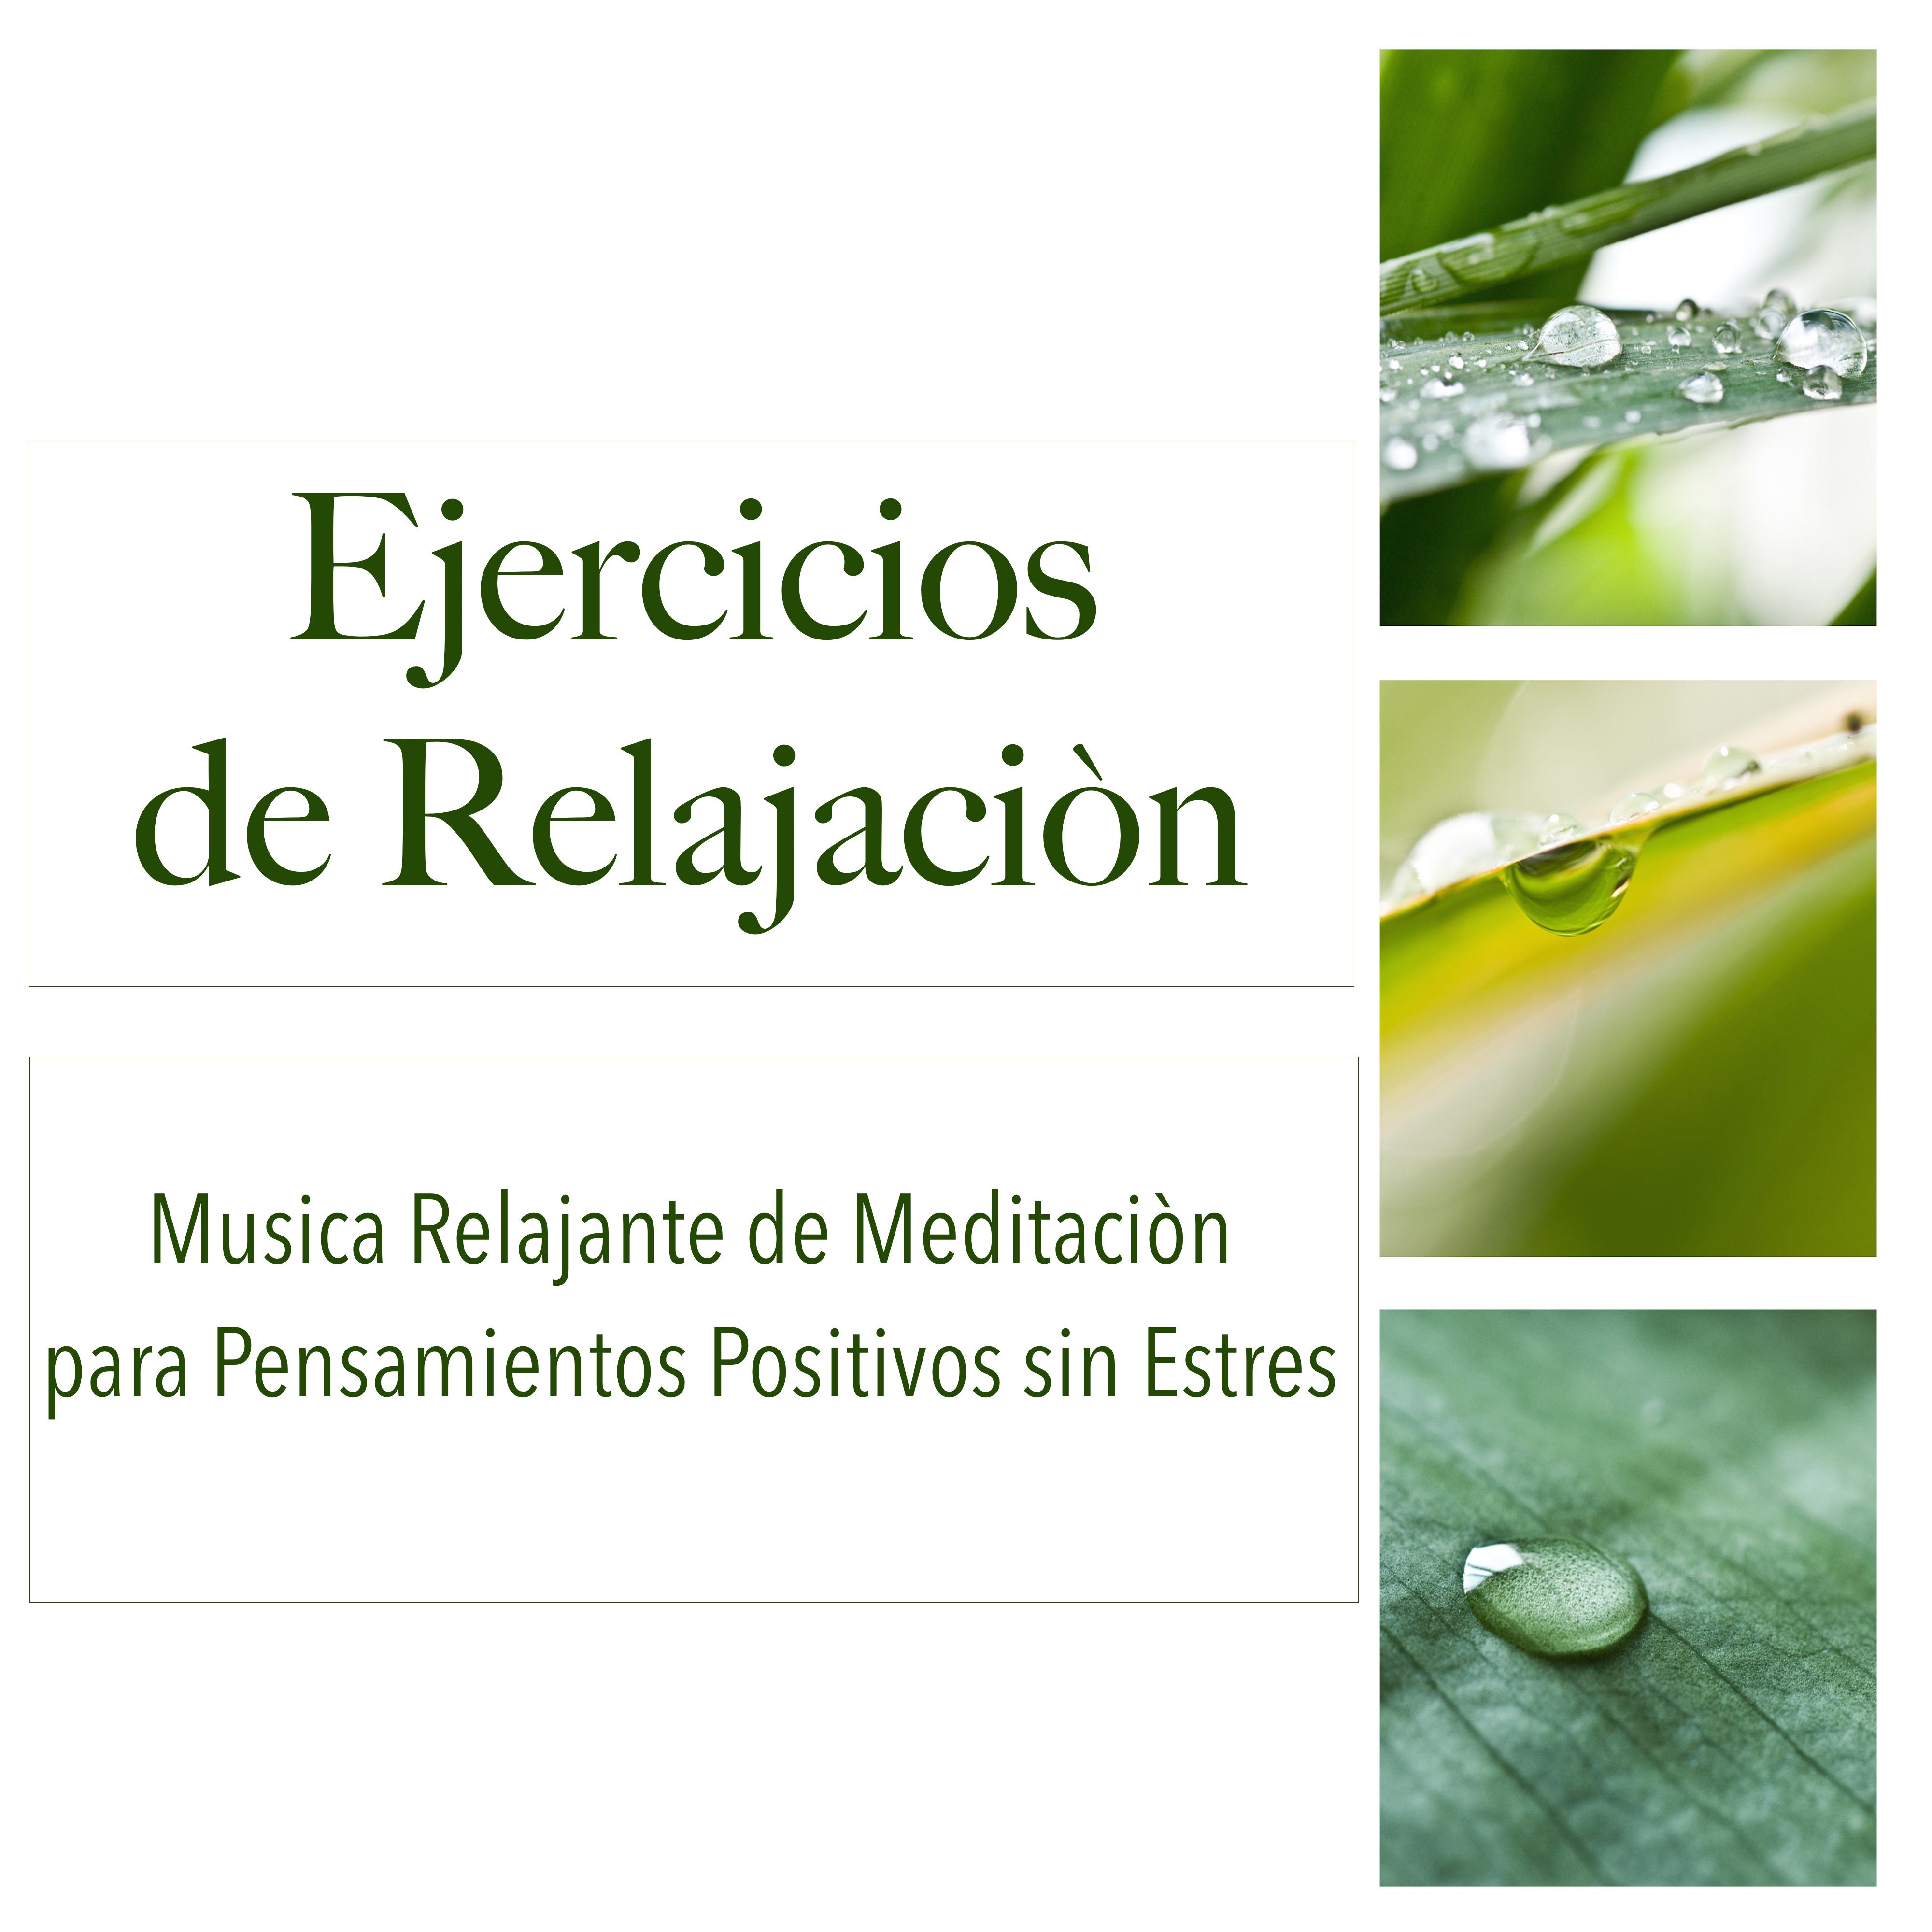 Ejercicios de Relajaciòn - Musica Relajante de Meditaciòn para Pensamientos Positivos sin Estres